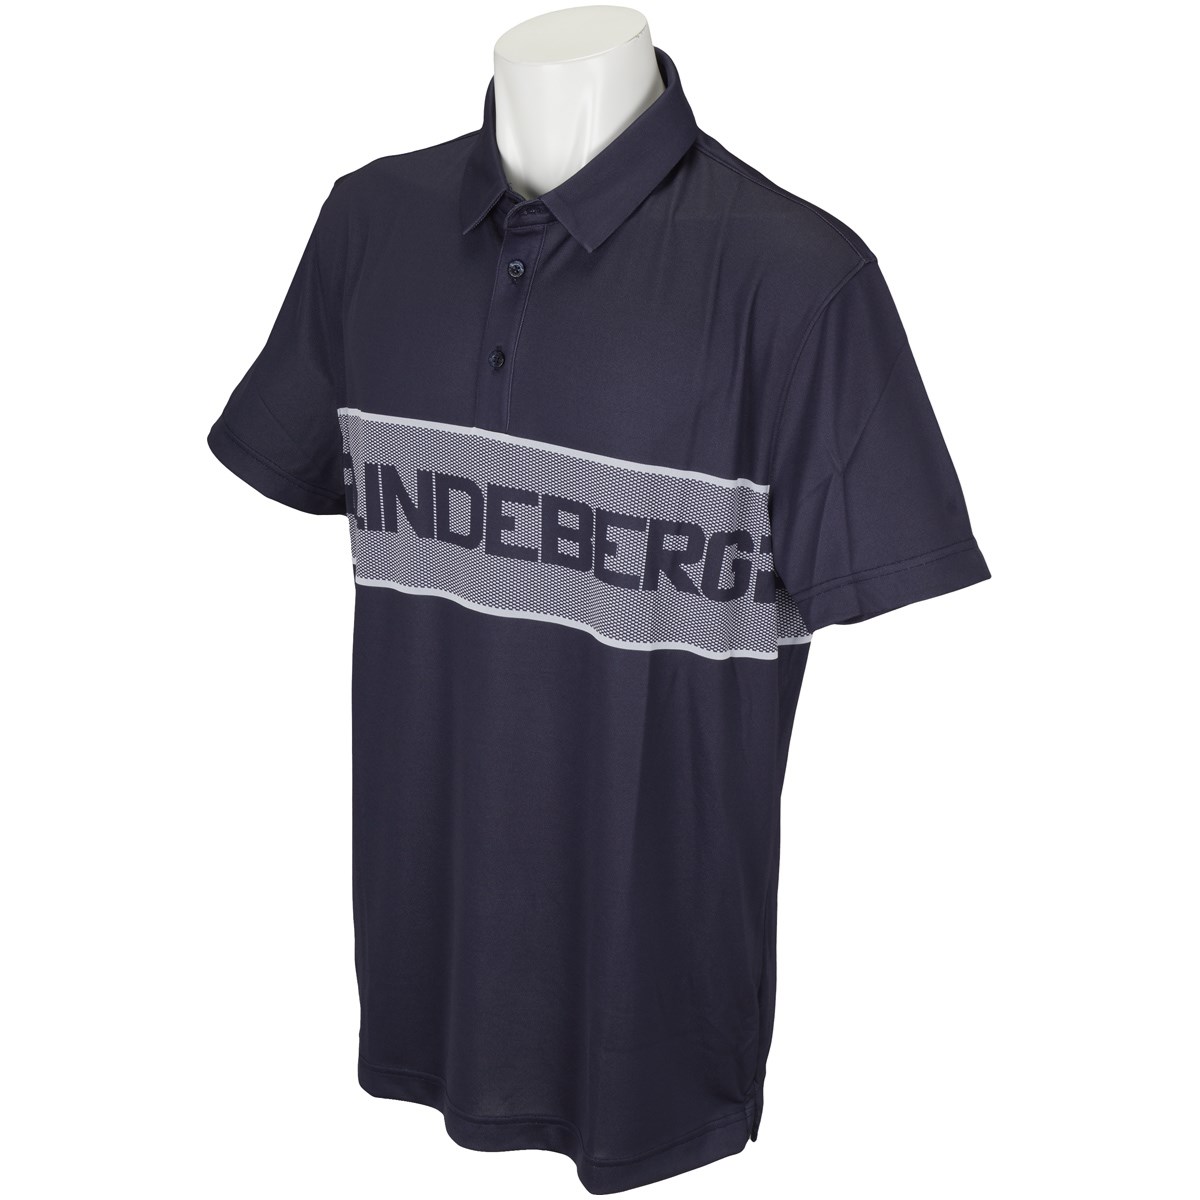 J.リンドバーグ M15C ADE REG フィット TX 半袖ポロシャツ 